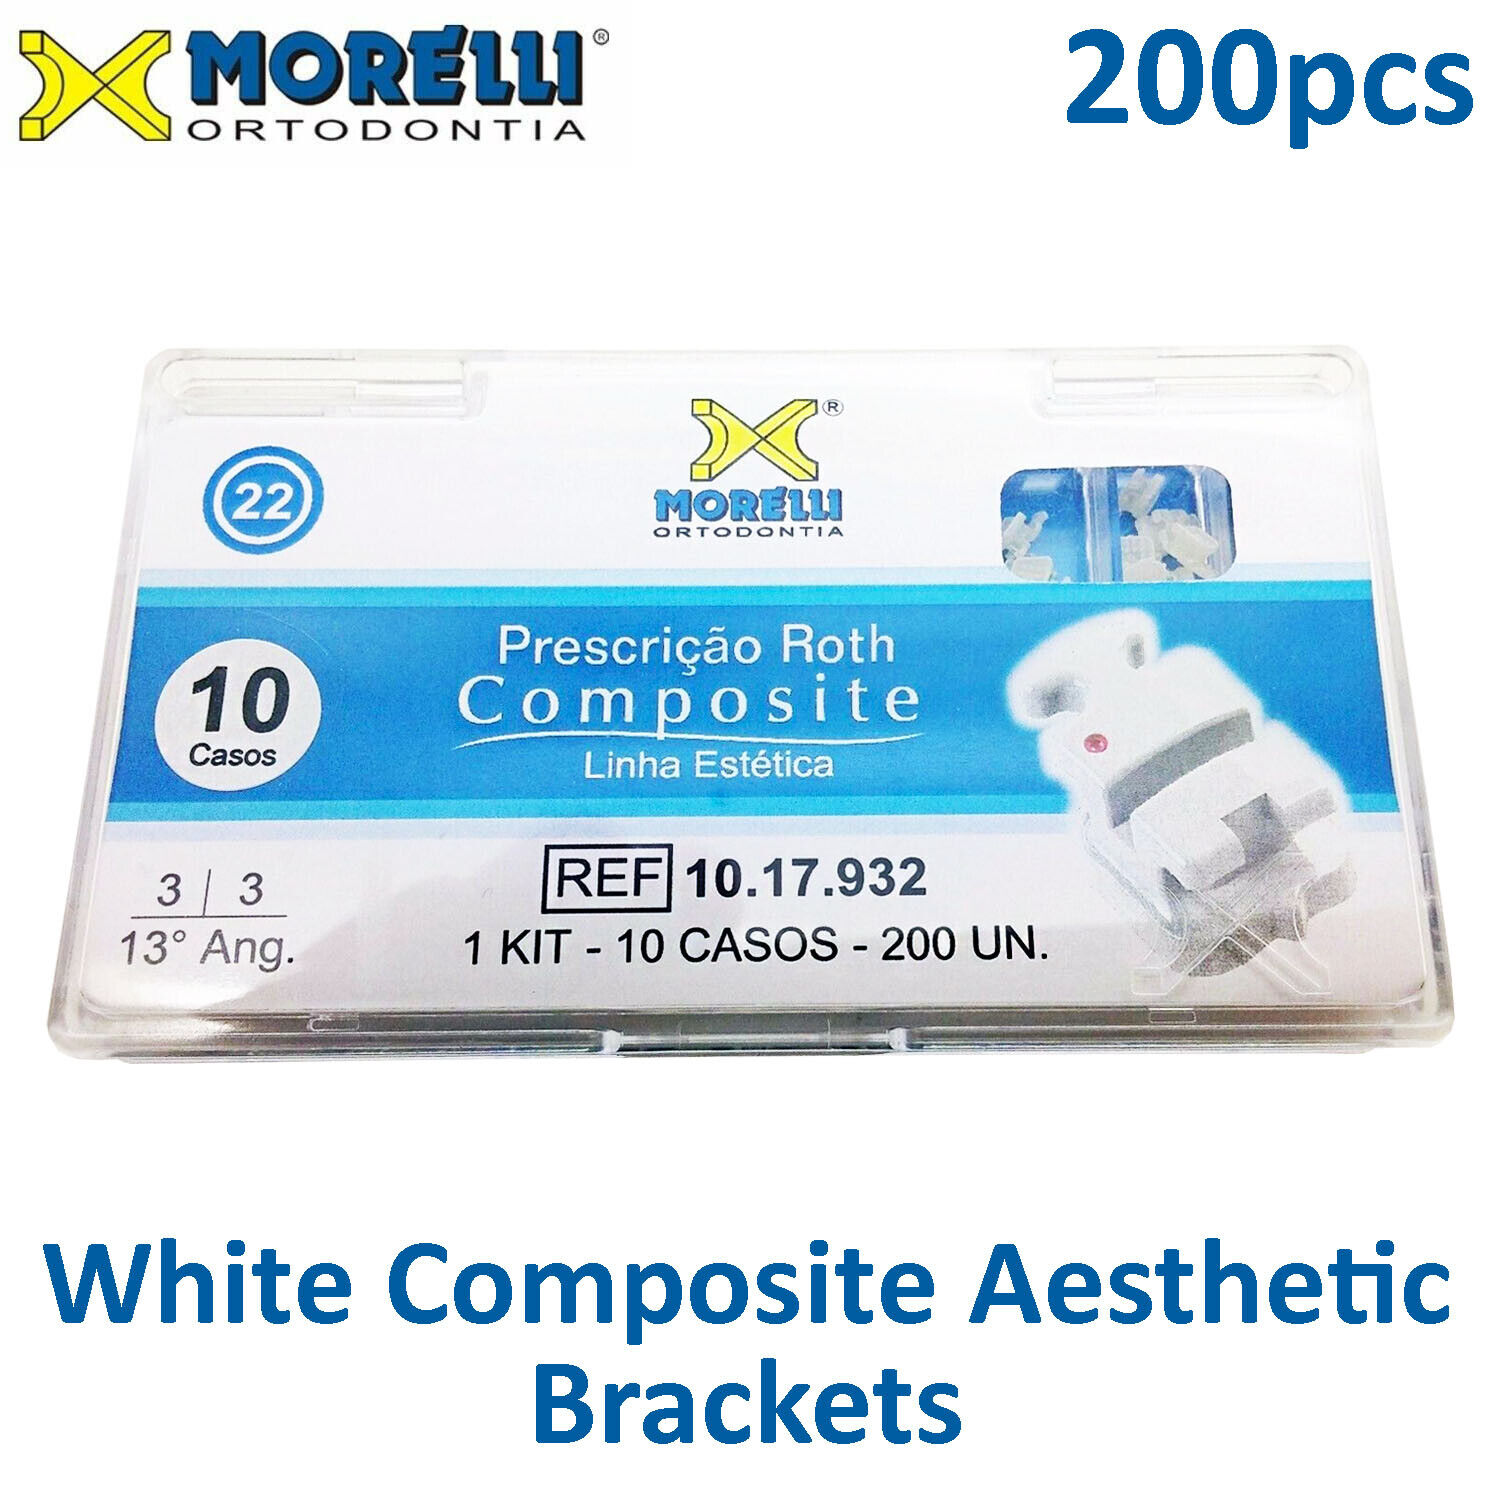 Morelli Dental Orthodontic White Composite Aesthetic Brackets 200pcs Total